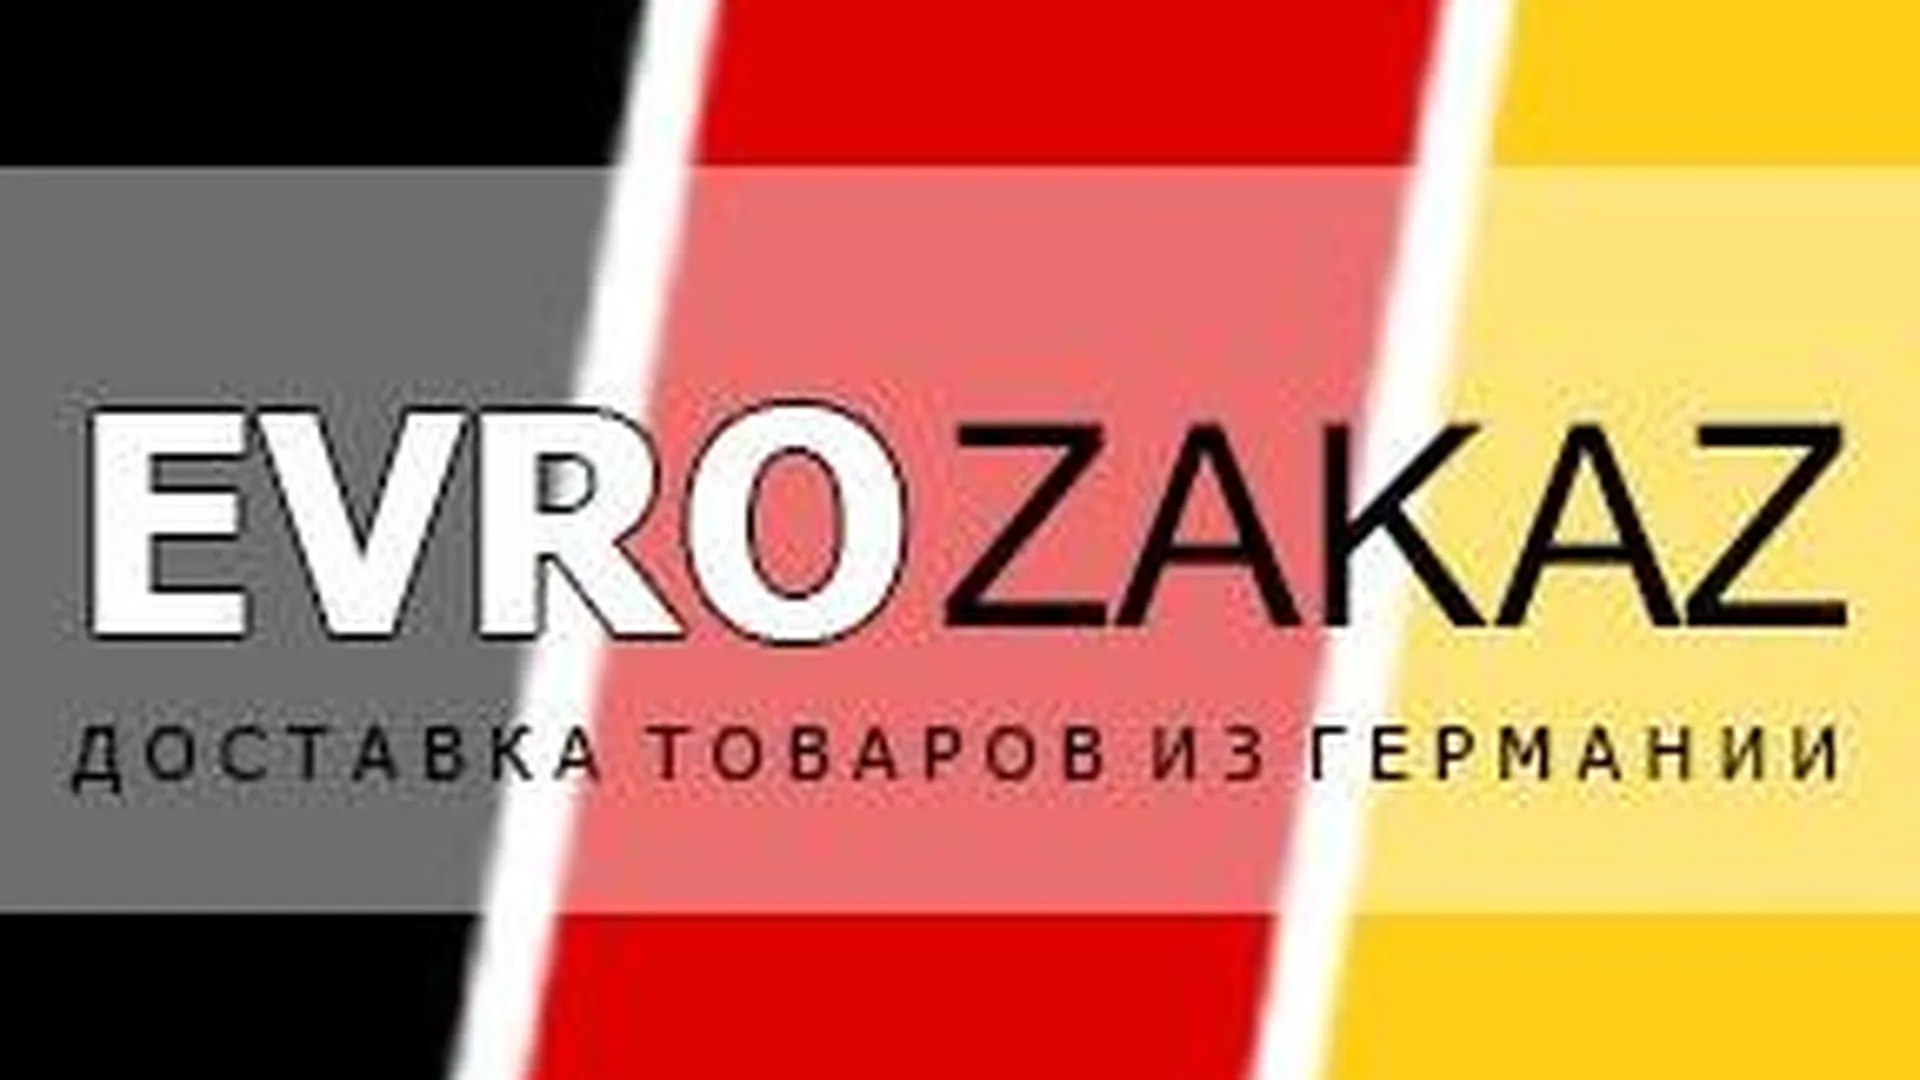 Страница "Evrozakaz" в "ВКонтакте"